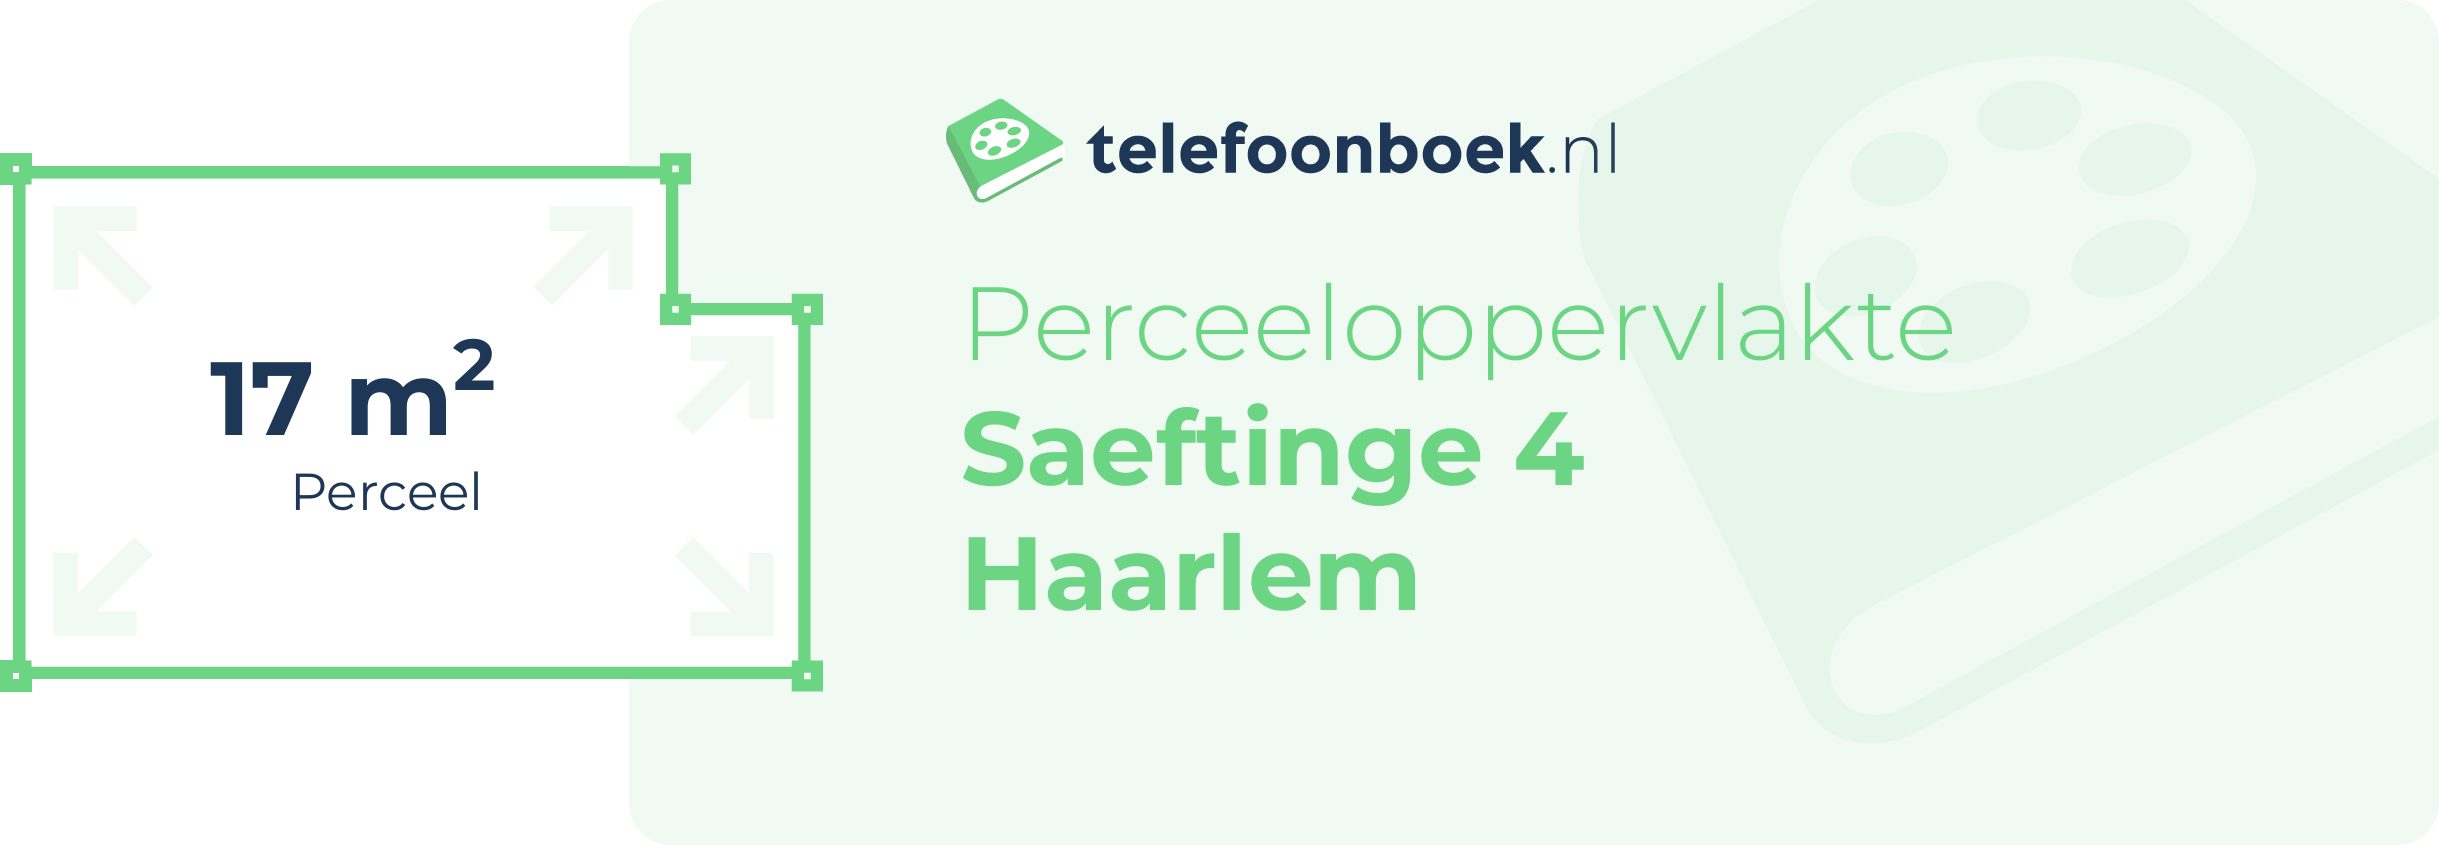 Perceeloppervlakte Saeftinge 4 Haarlem